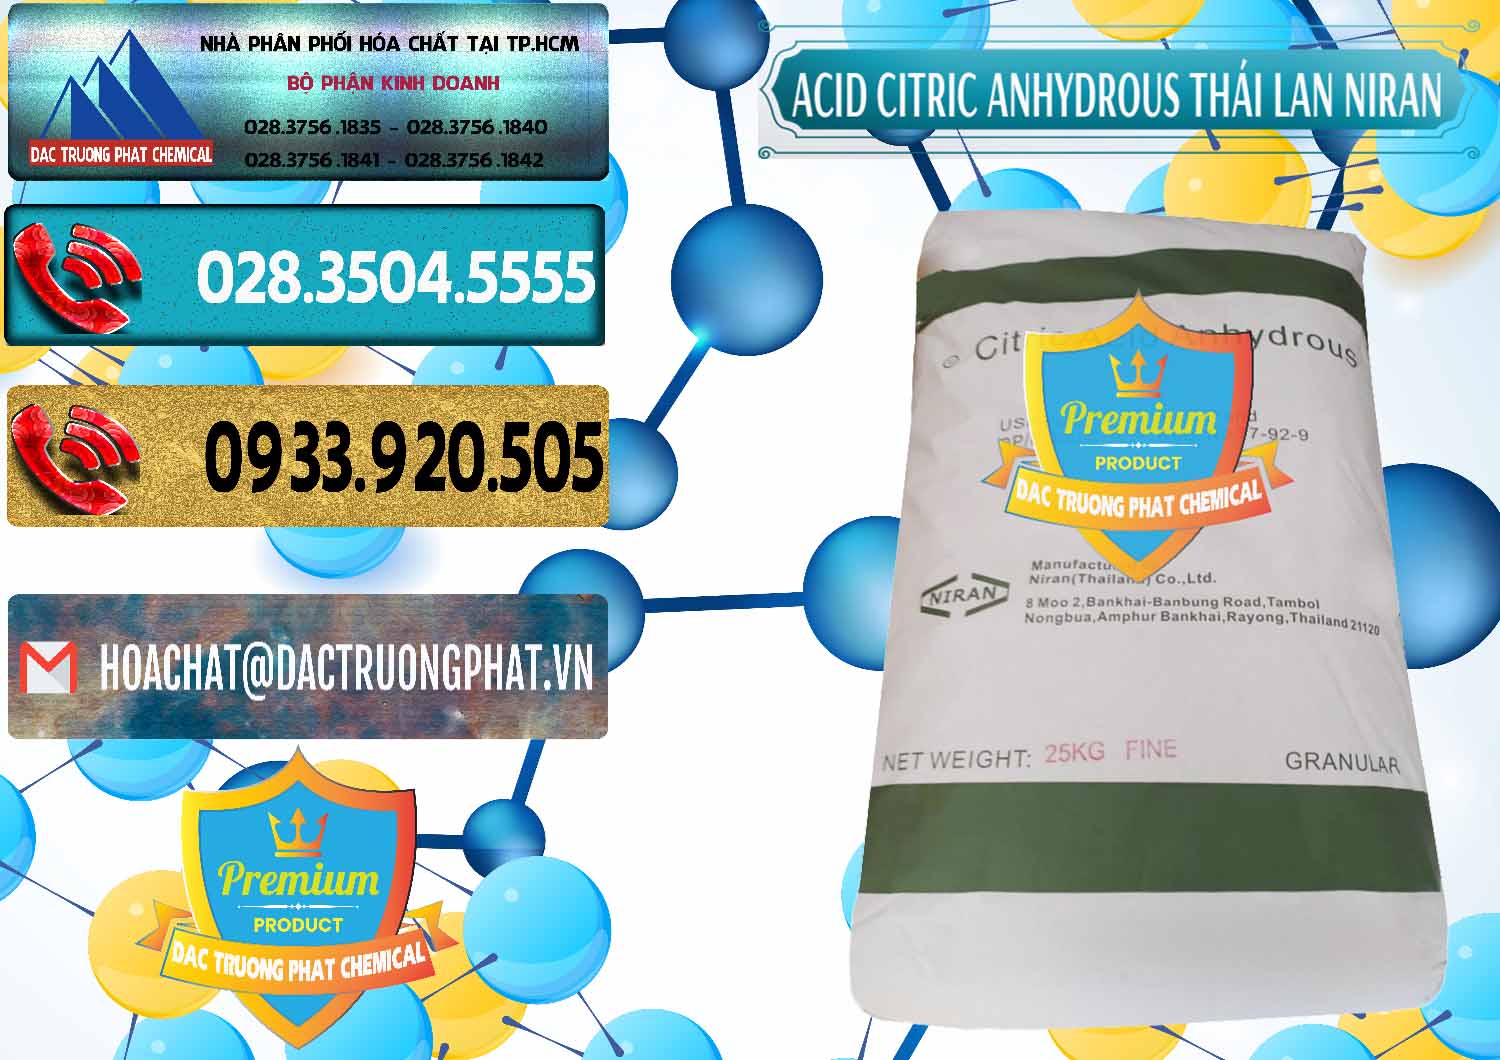 Cty cung cấp ( bán ) Acid Citric - Axit Citric Anhydrous - Thái Lan Niran - 0231 - Chuyên cung cấp _ bán hóa chất tại TP.HCM - hoachatdetnhuom.com